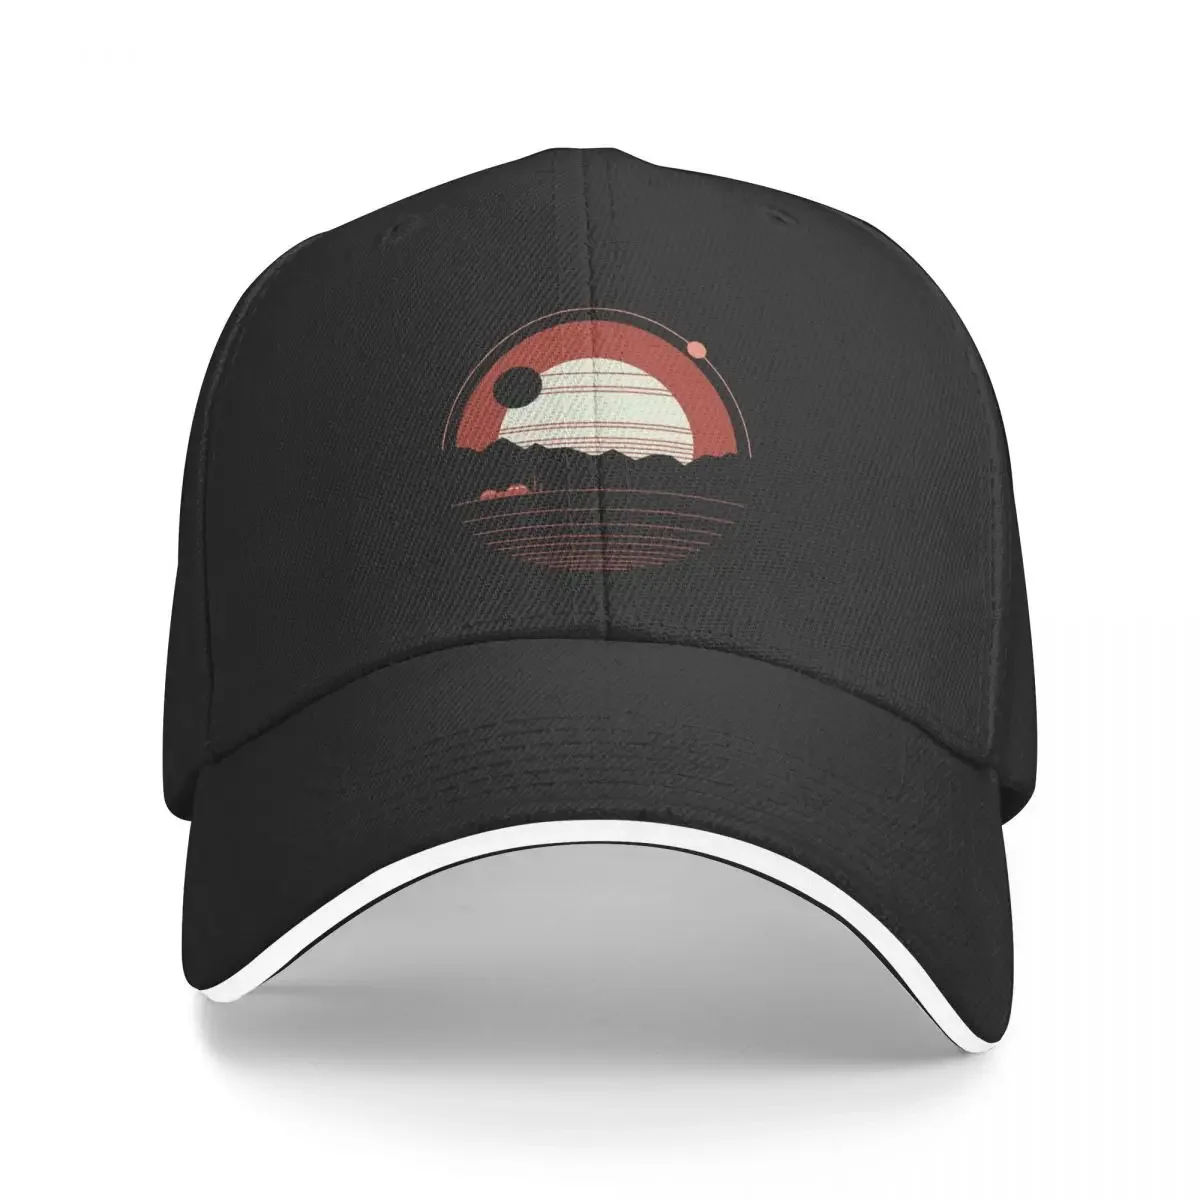 Solitude Baseball Cap Sunhat Golf Golf Wear Custom Cap Hats For Women Men's